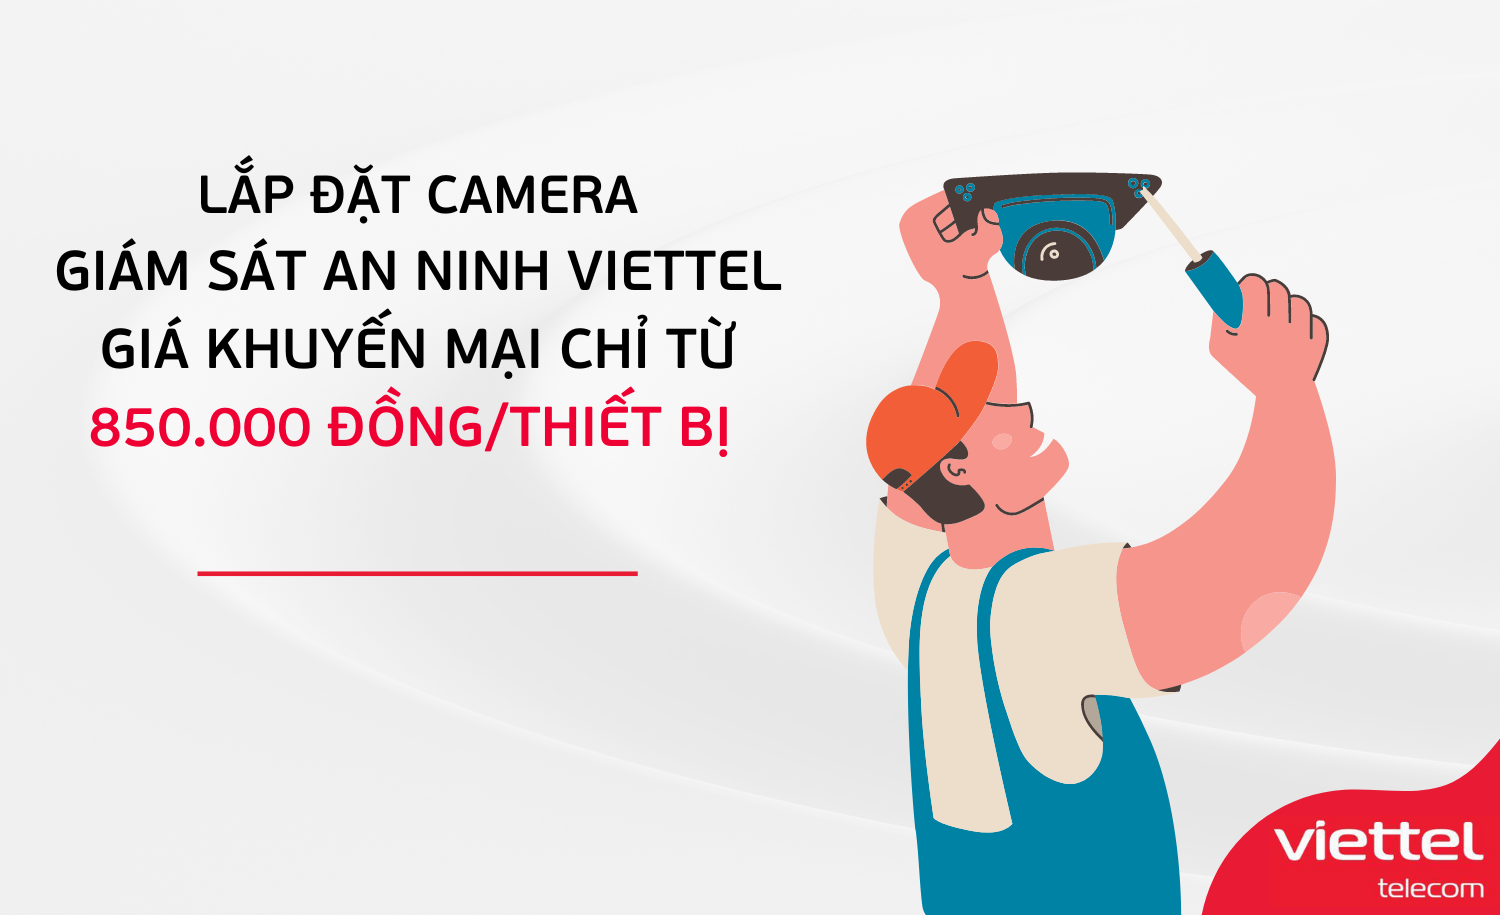 Lắp đặt camera giám sát an ninh Viettel giá khuyến mại chỉ từ 850.000 đồng/thiết bị